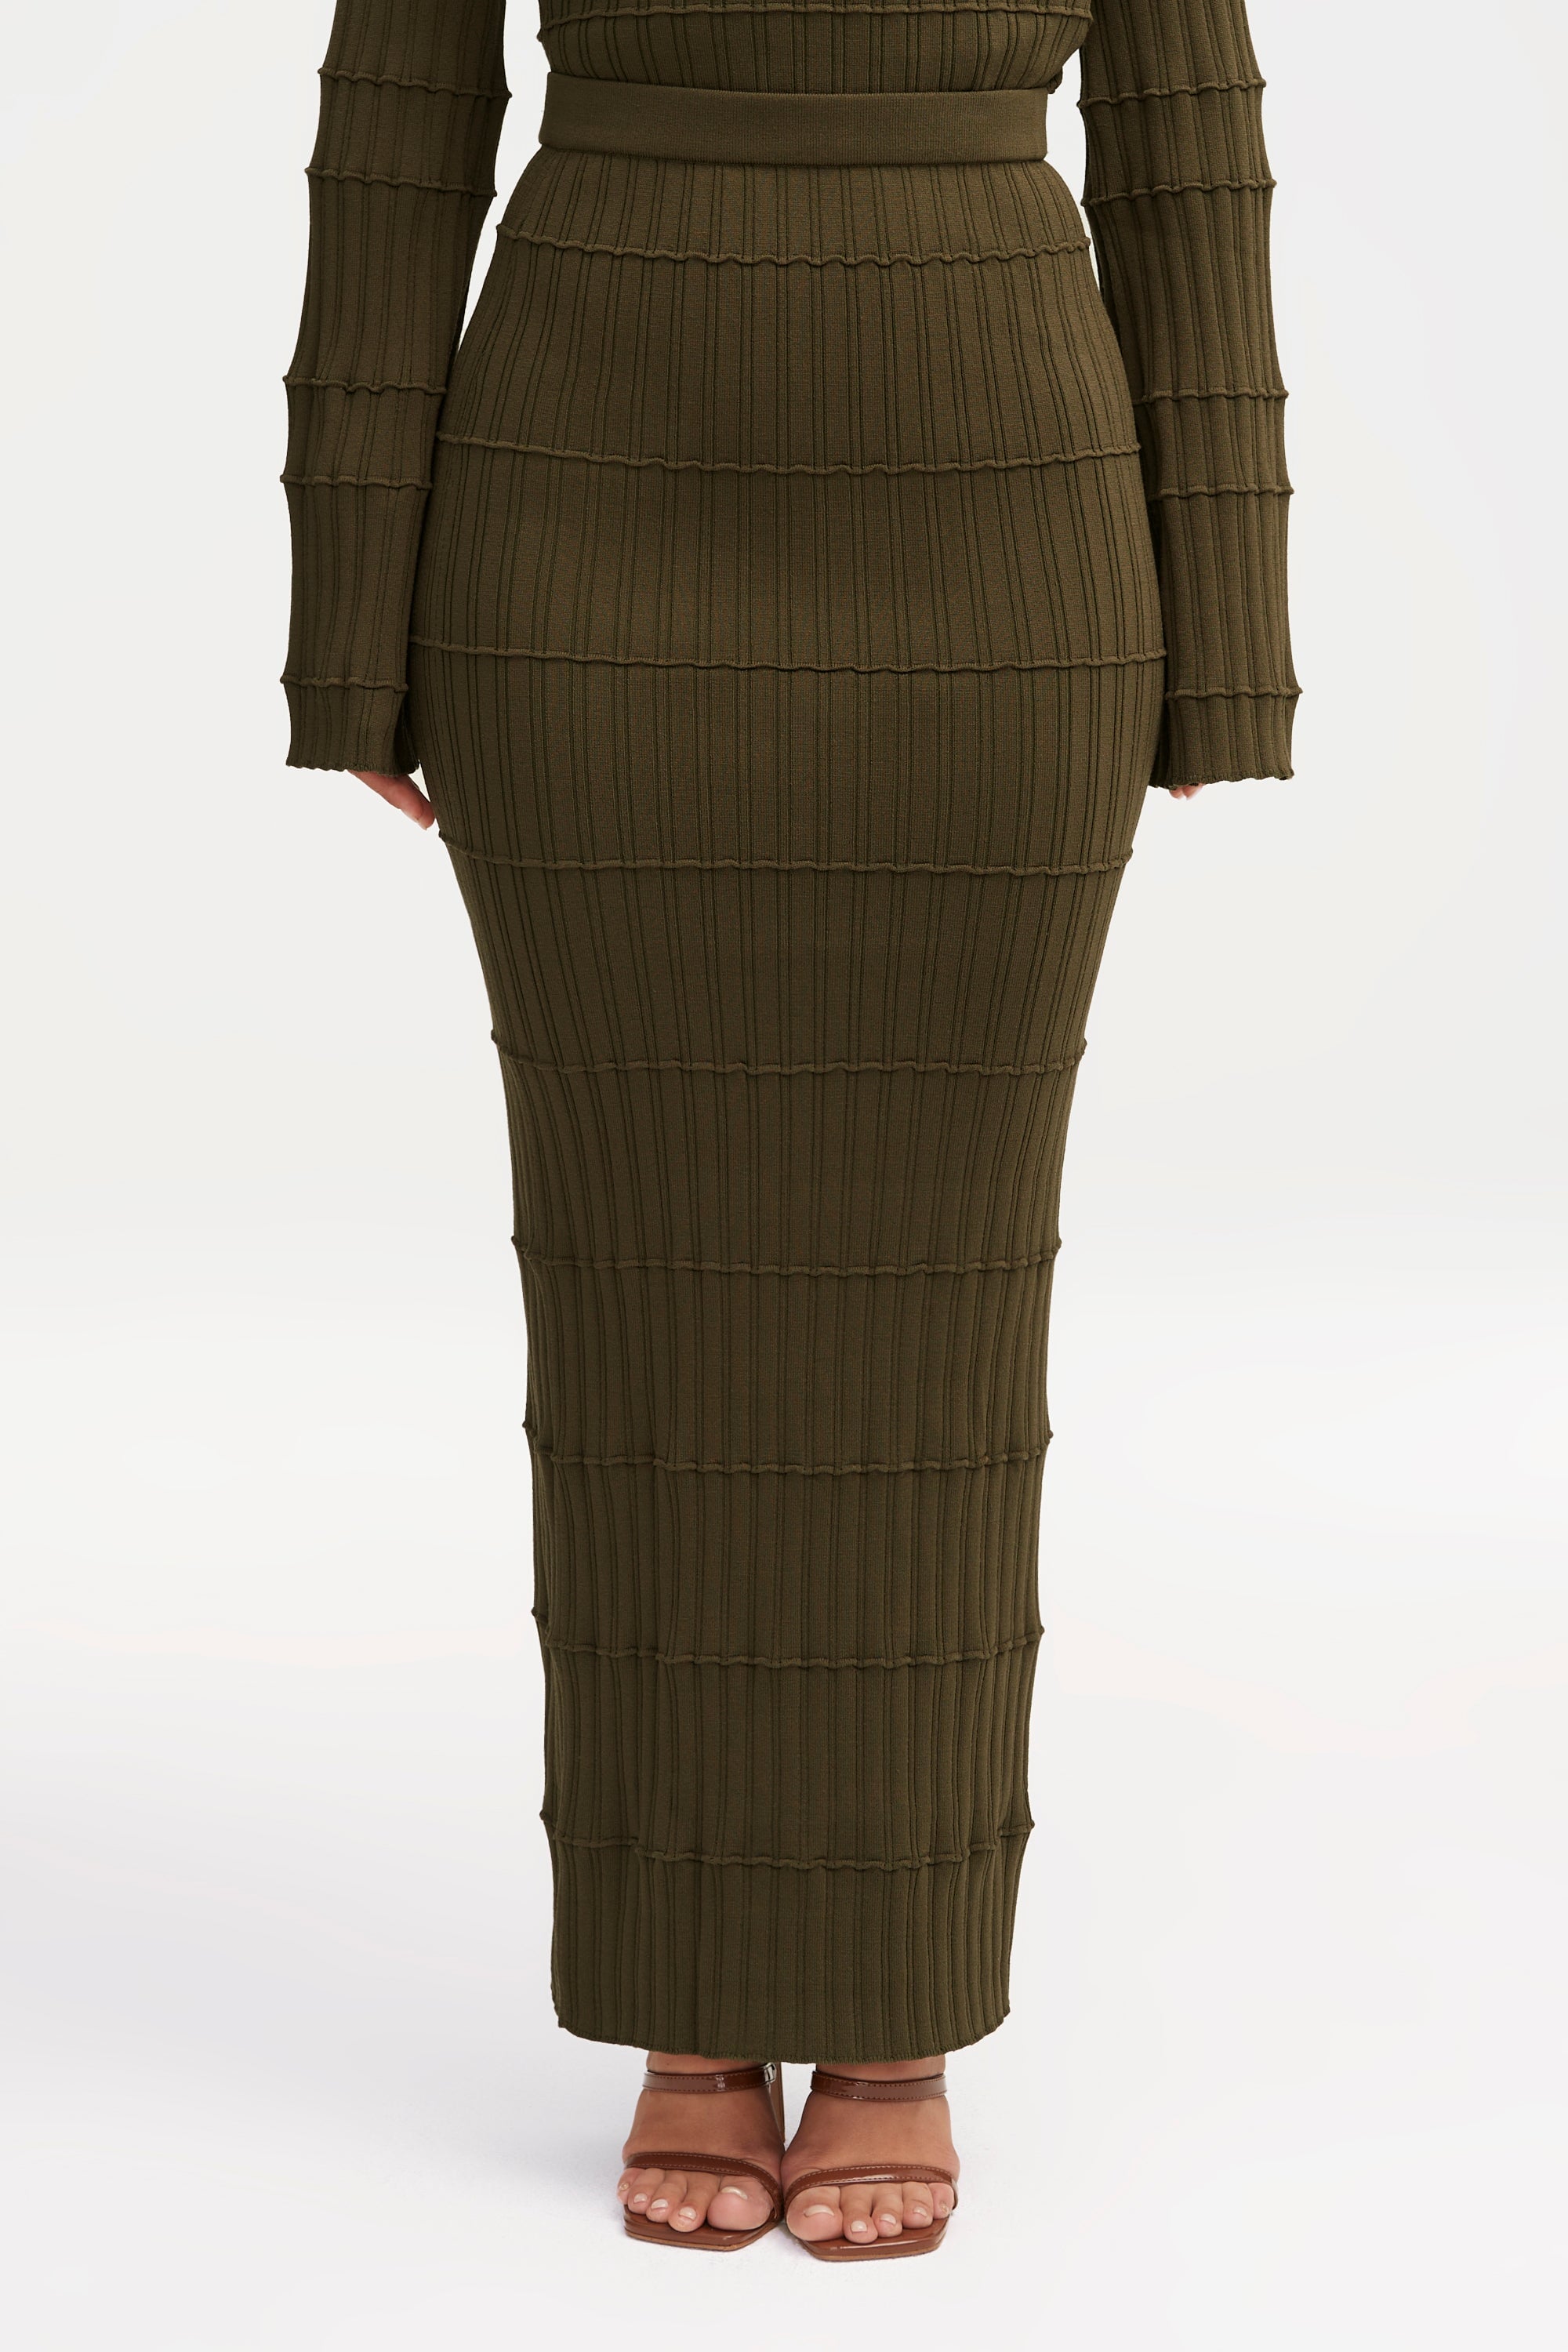 Rania Ribbed Knit Maxi Skirt - Sage Clothing Veiled 